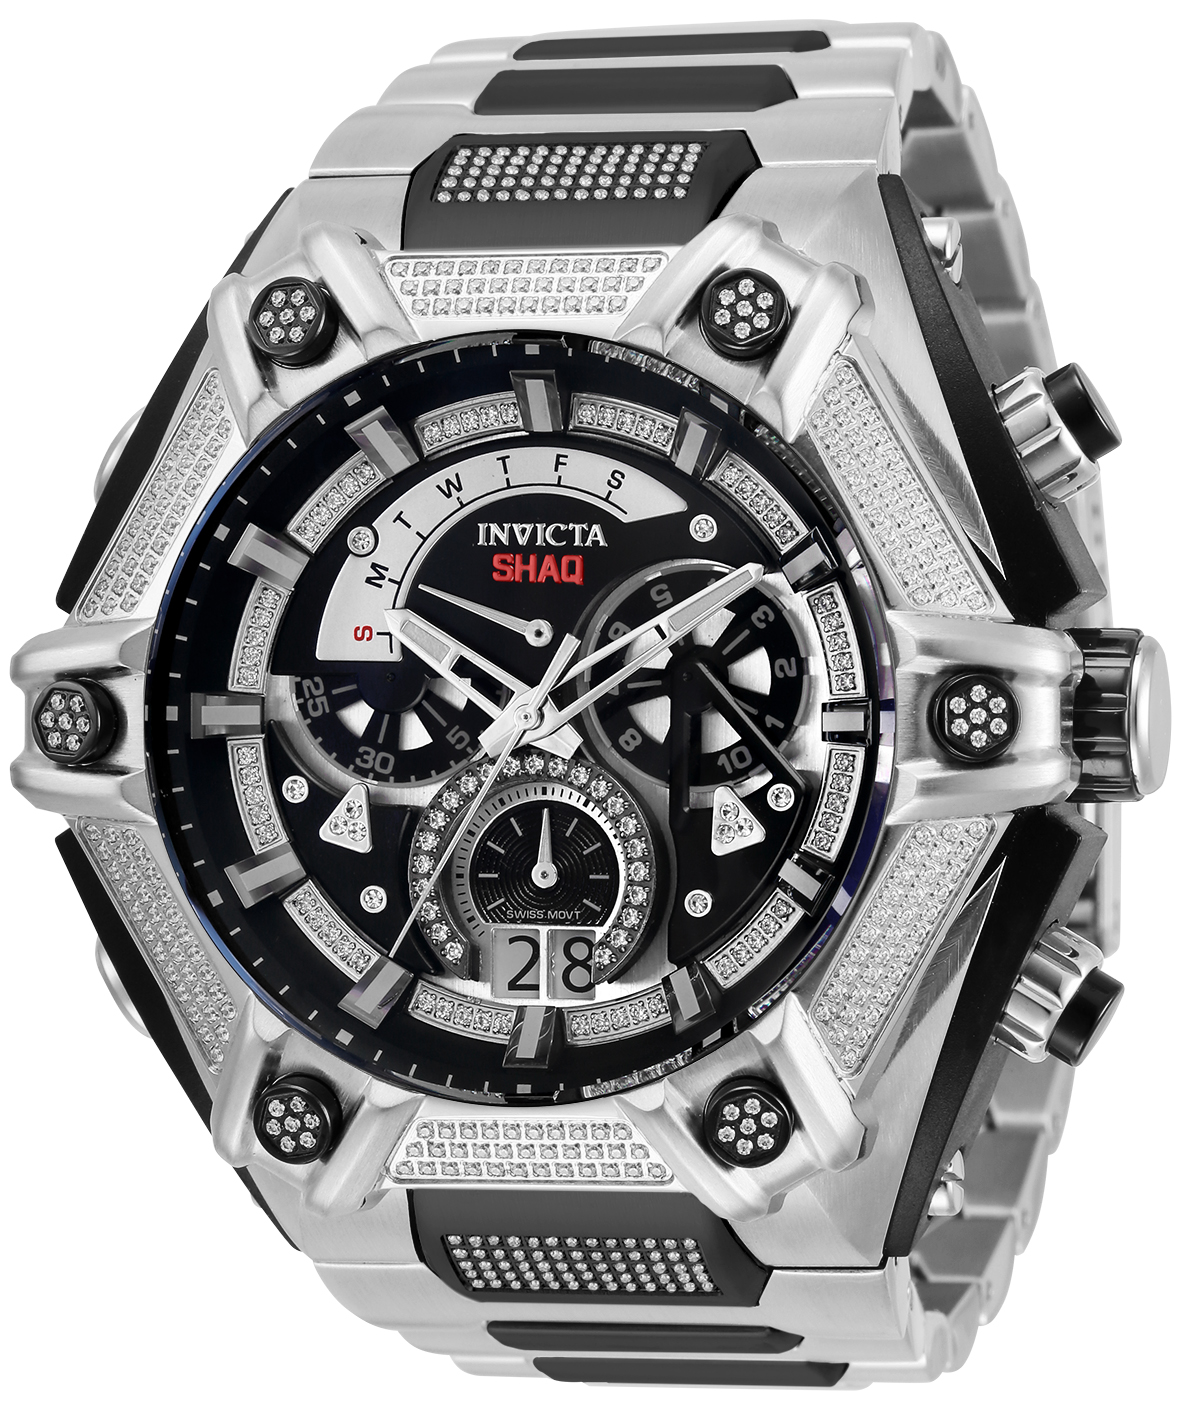 Invicta SHAQ 0.4 Carat Diamond Men's Watch - 60mm, Steel, Black (33689)